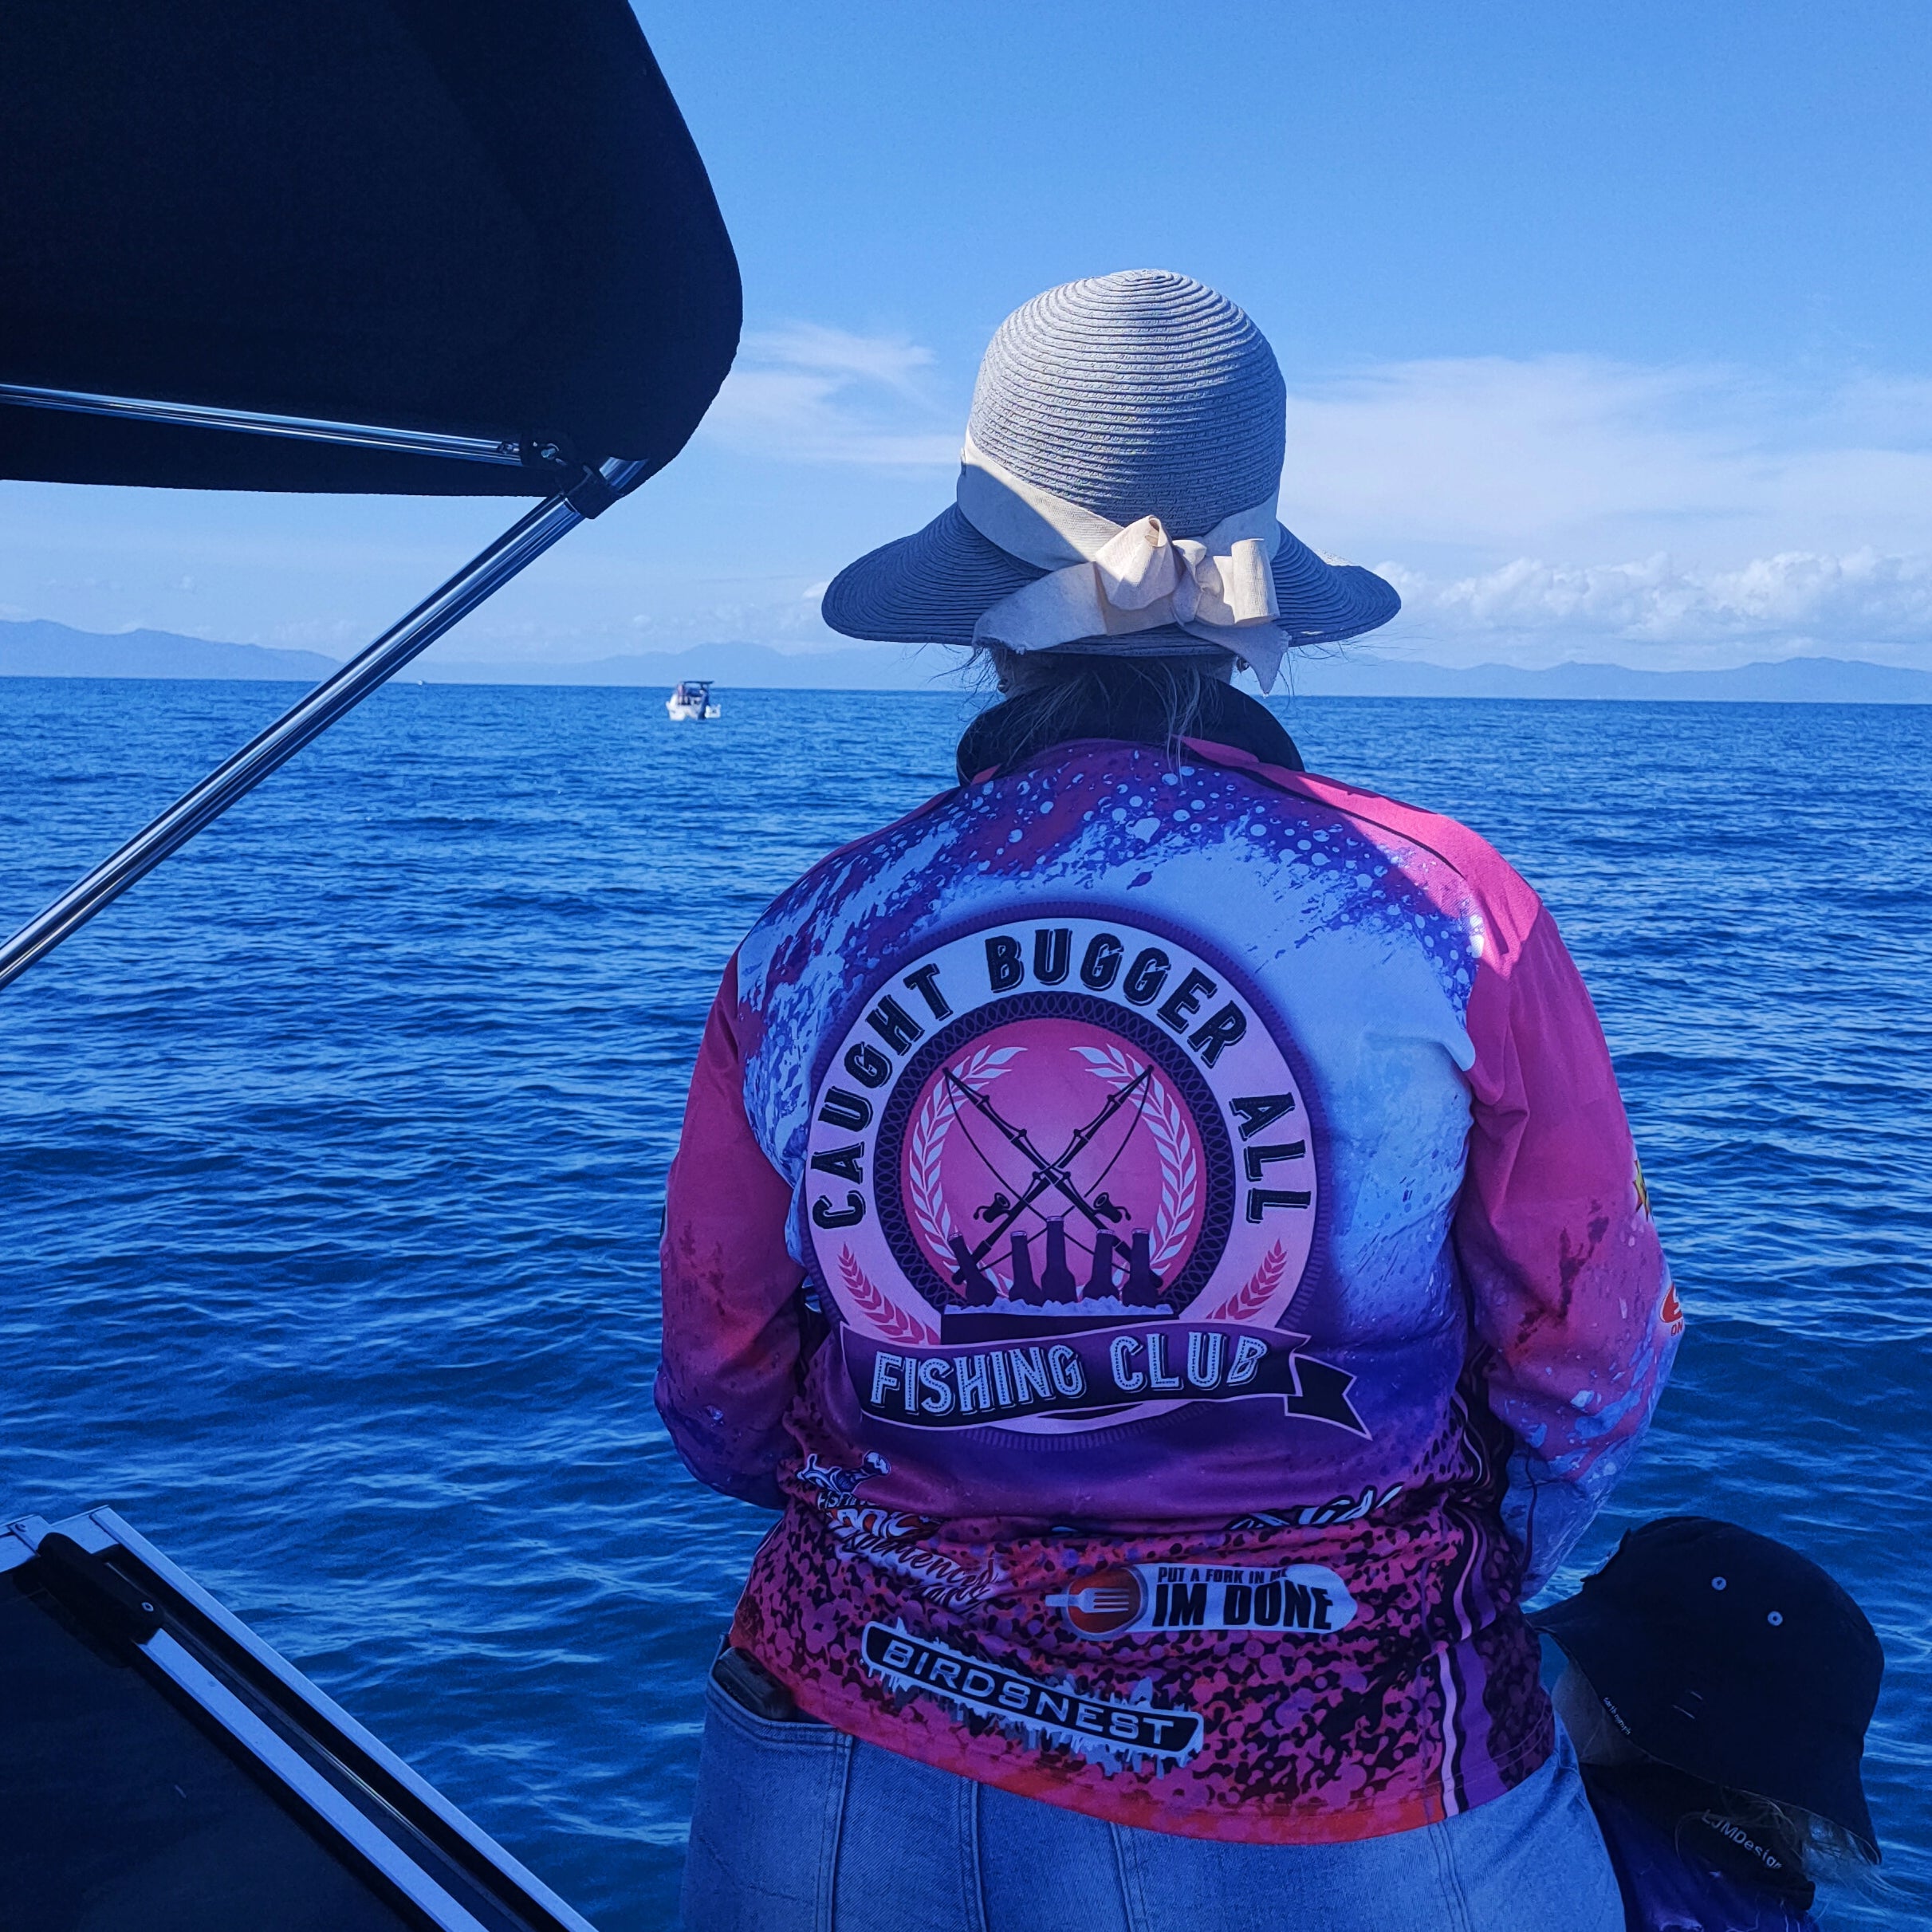 Caught Bugger All Fishing Club Pink – Fishing Shirt by LJMDesign